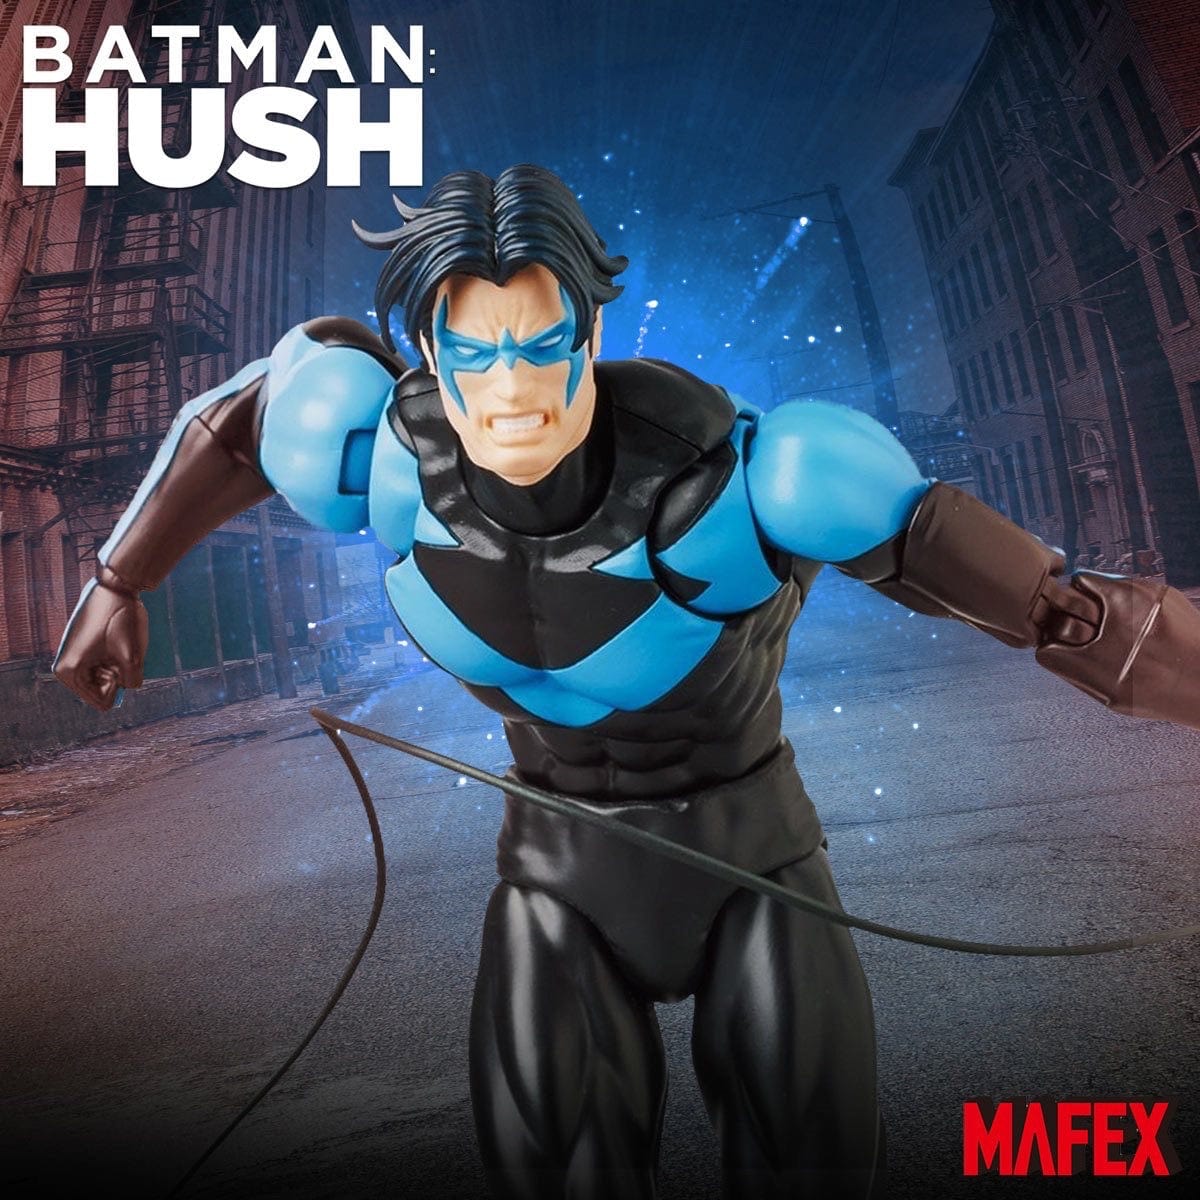 MAFEX No. 175 Batman: Hush Nightwing Action Figure